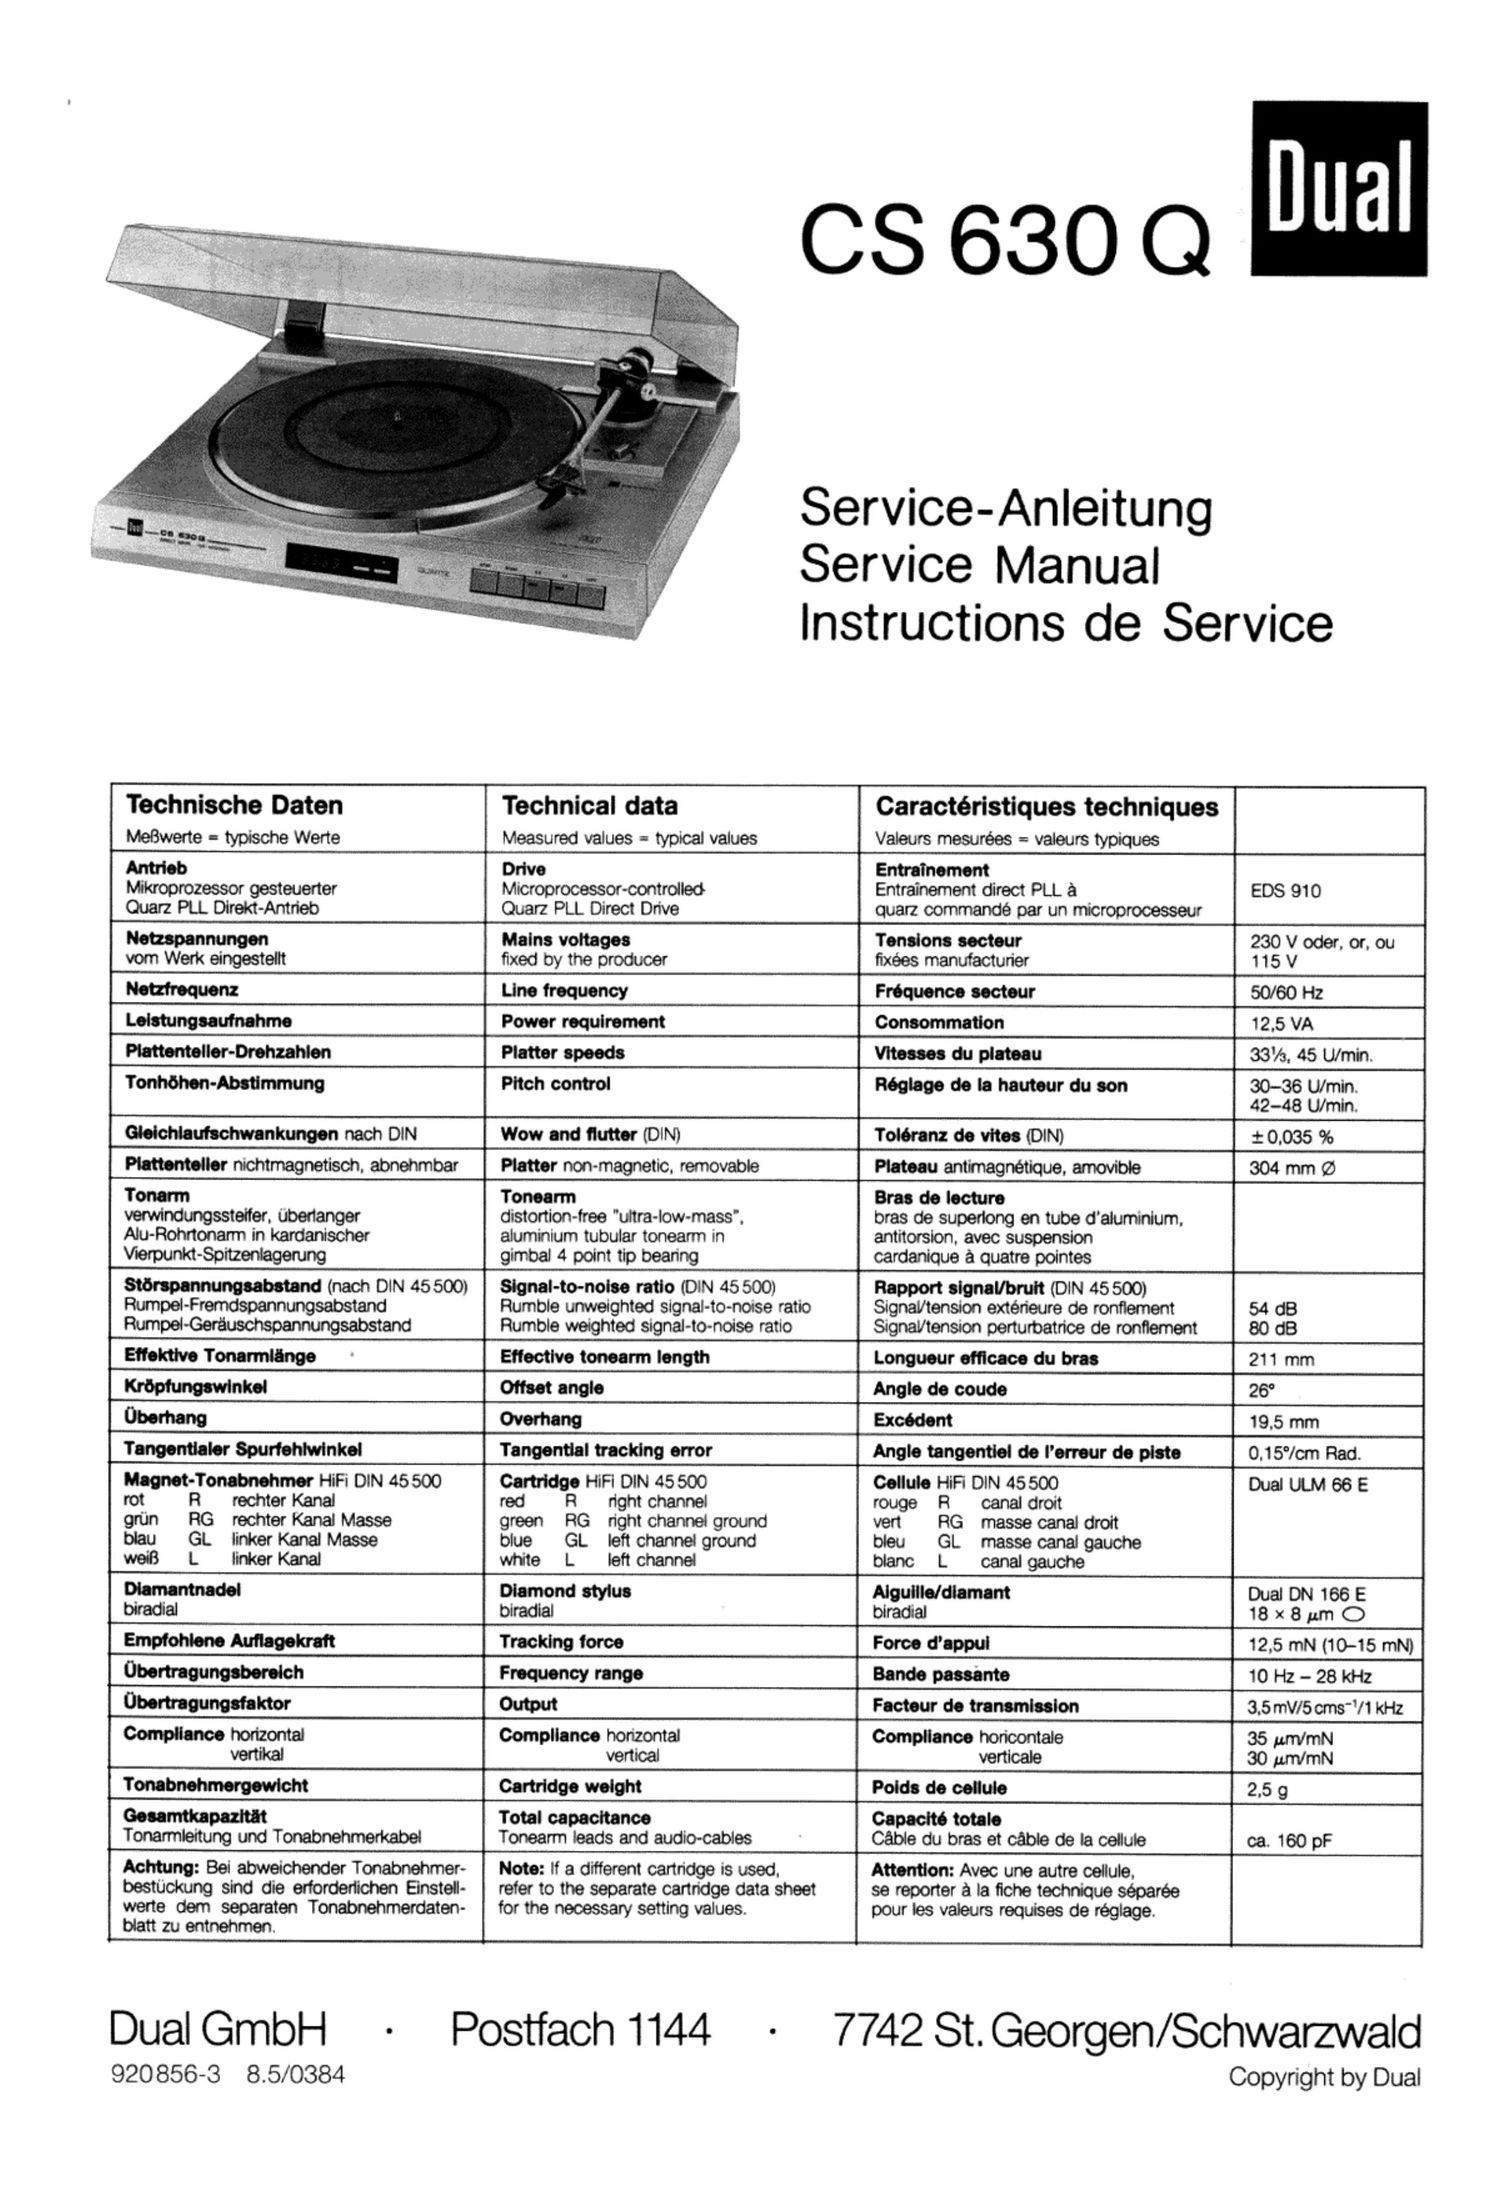 Dual CS 630 Q Service Manual